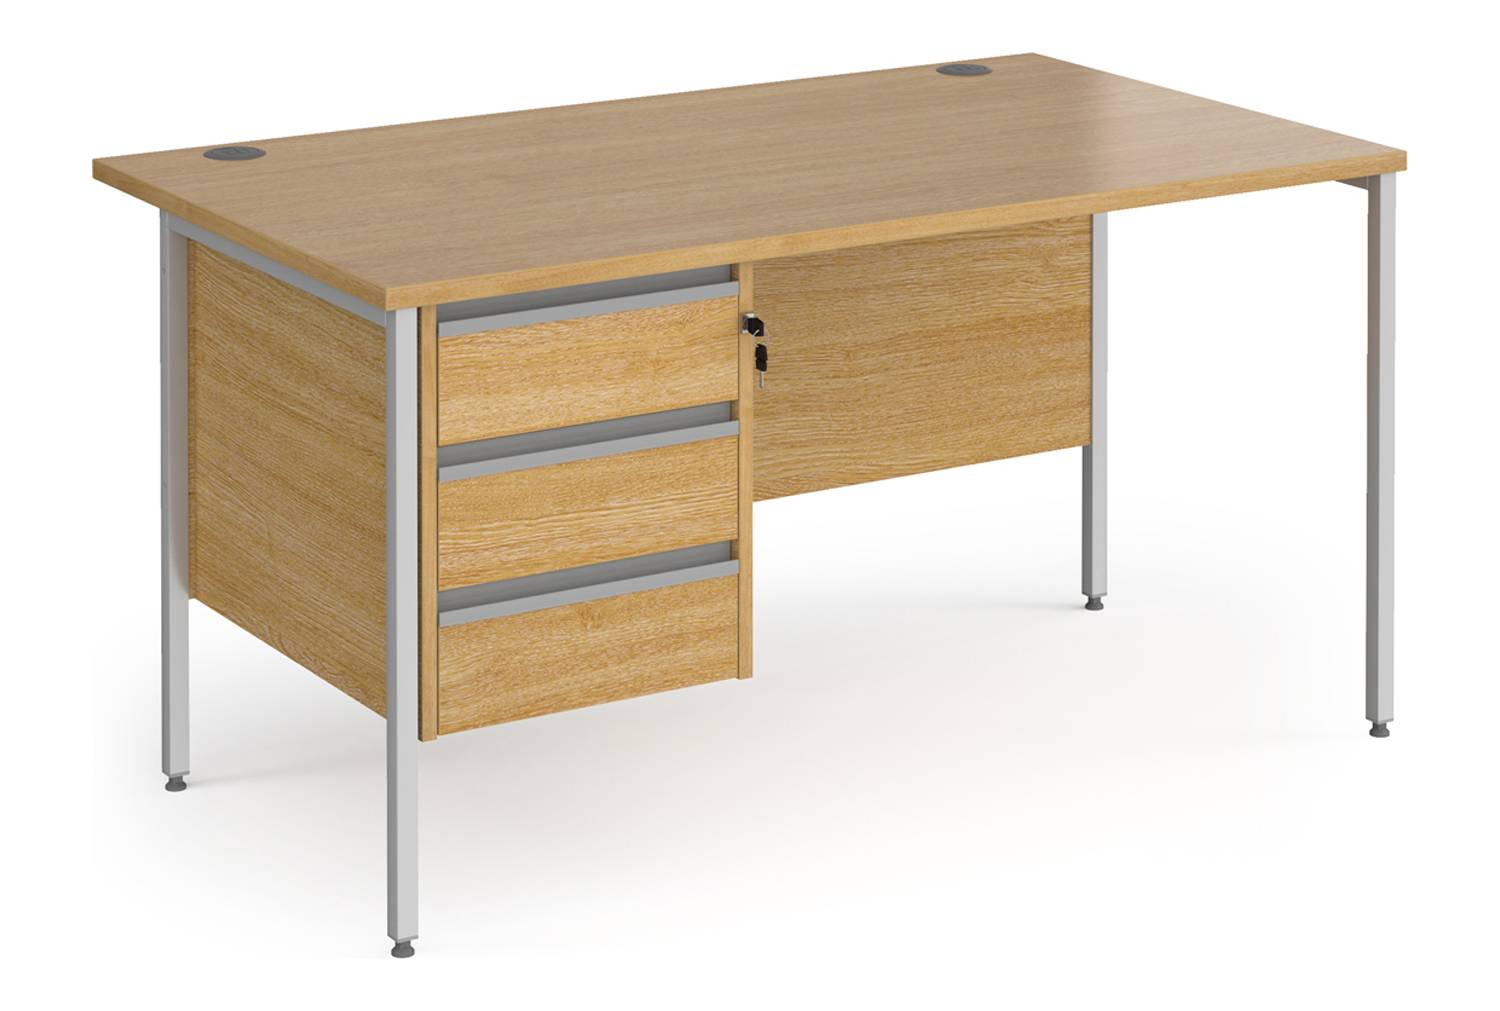 Value Line Classic+ Rectangular H-Leg Office Desk 3 Drawers (Silver Leg), 140wx80dx73h (cm), Oak, Fully Installed